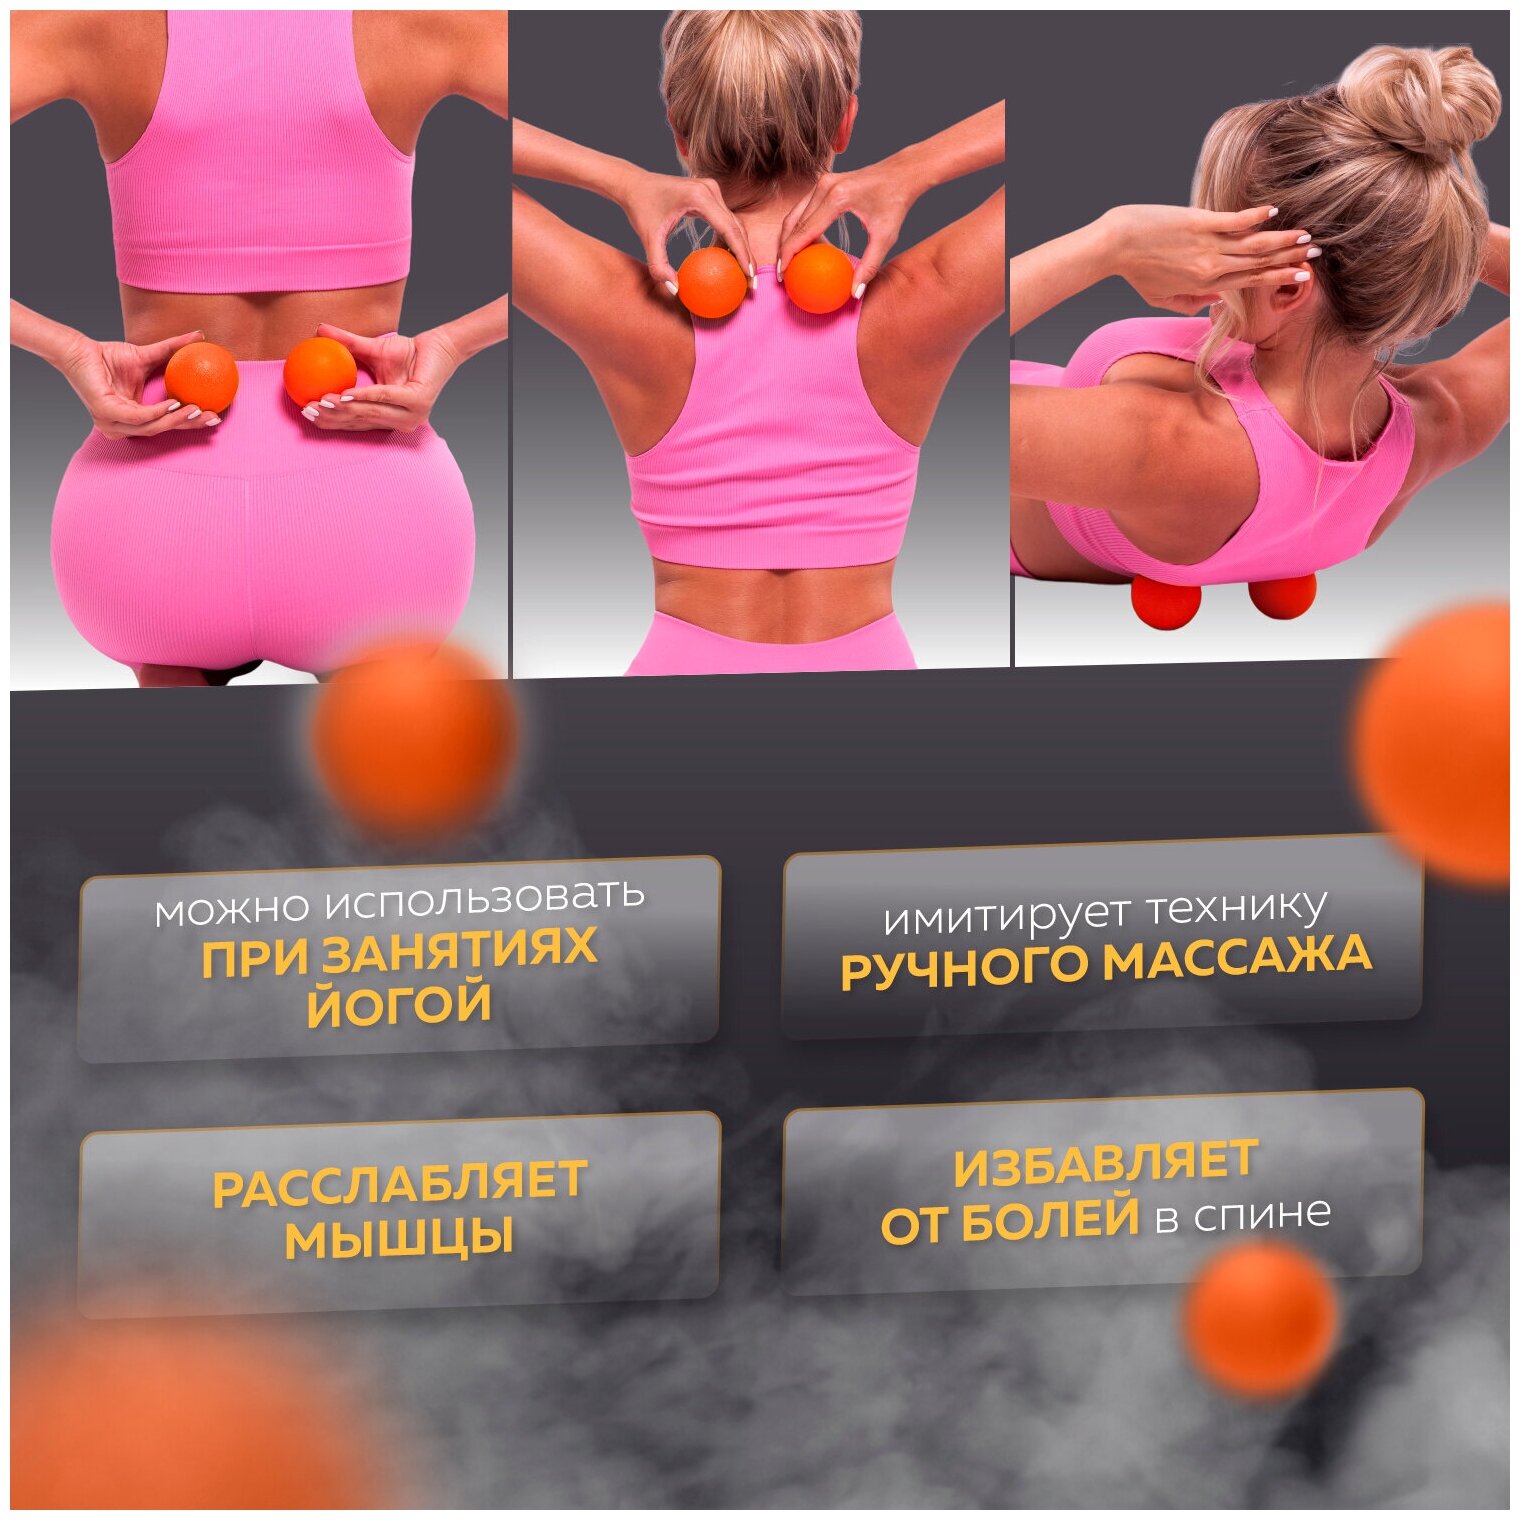 Мяч массажный для МФР, фитнеса и йоги Arushanoff, оранжевый (M1)